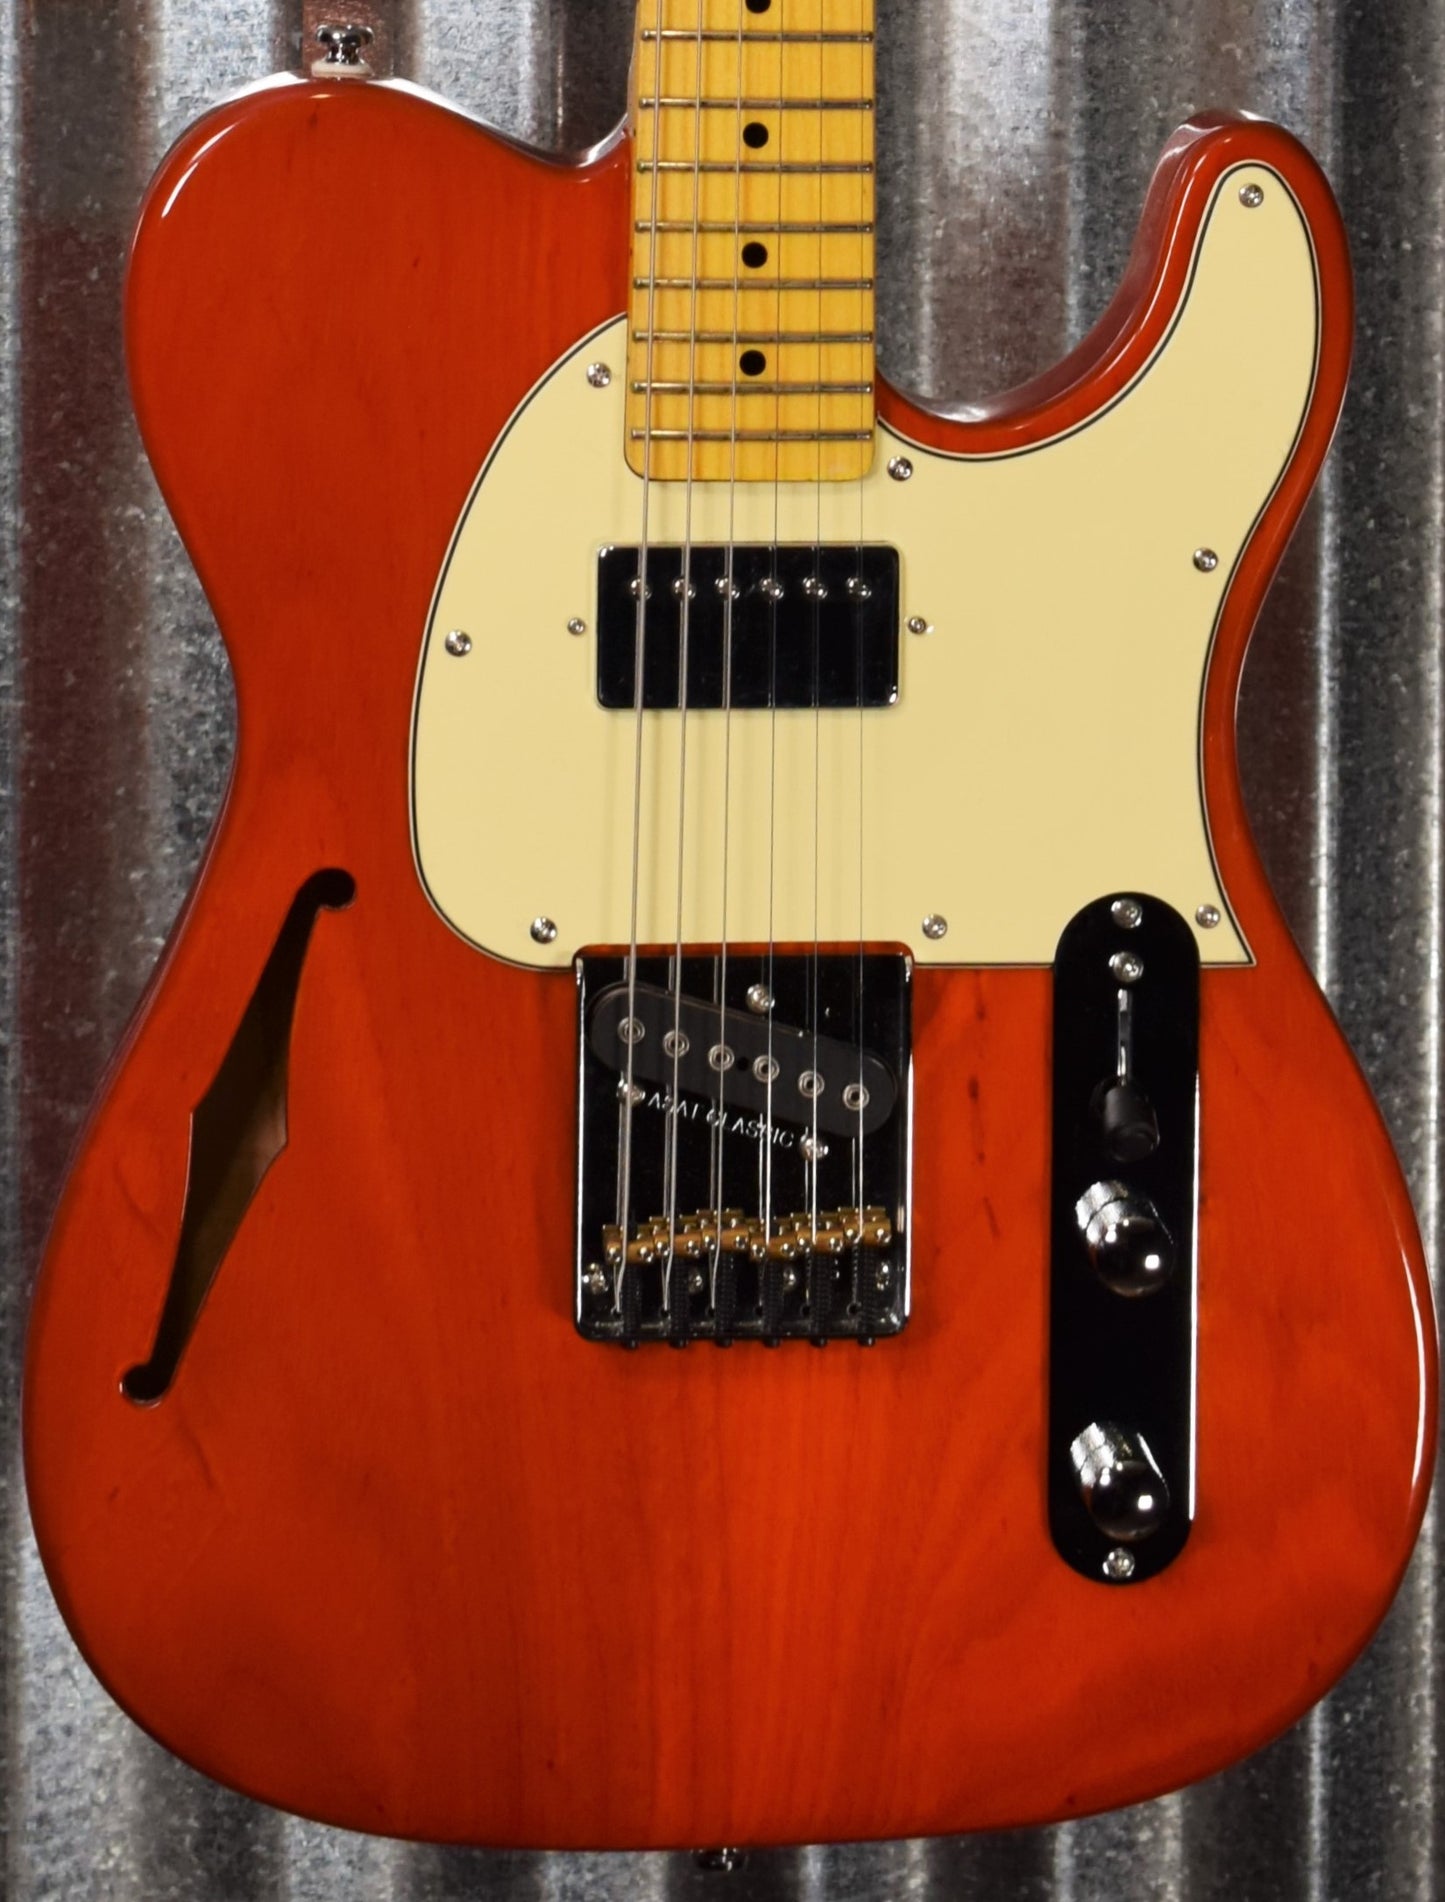 G&L Tribute ASAT Classic Bluesboy Semi Hollow Clear Orange Guitar #8093 Demo